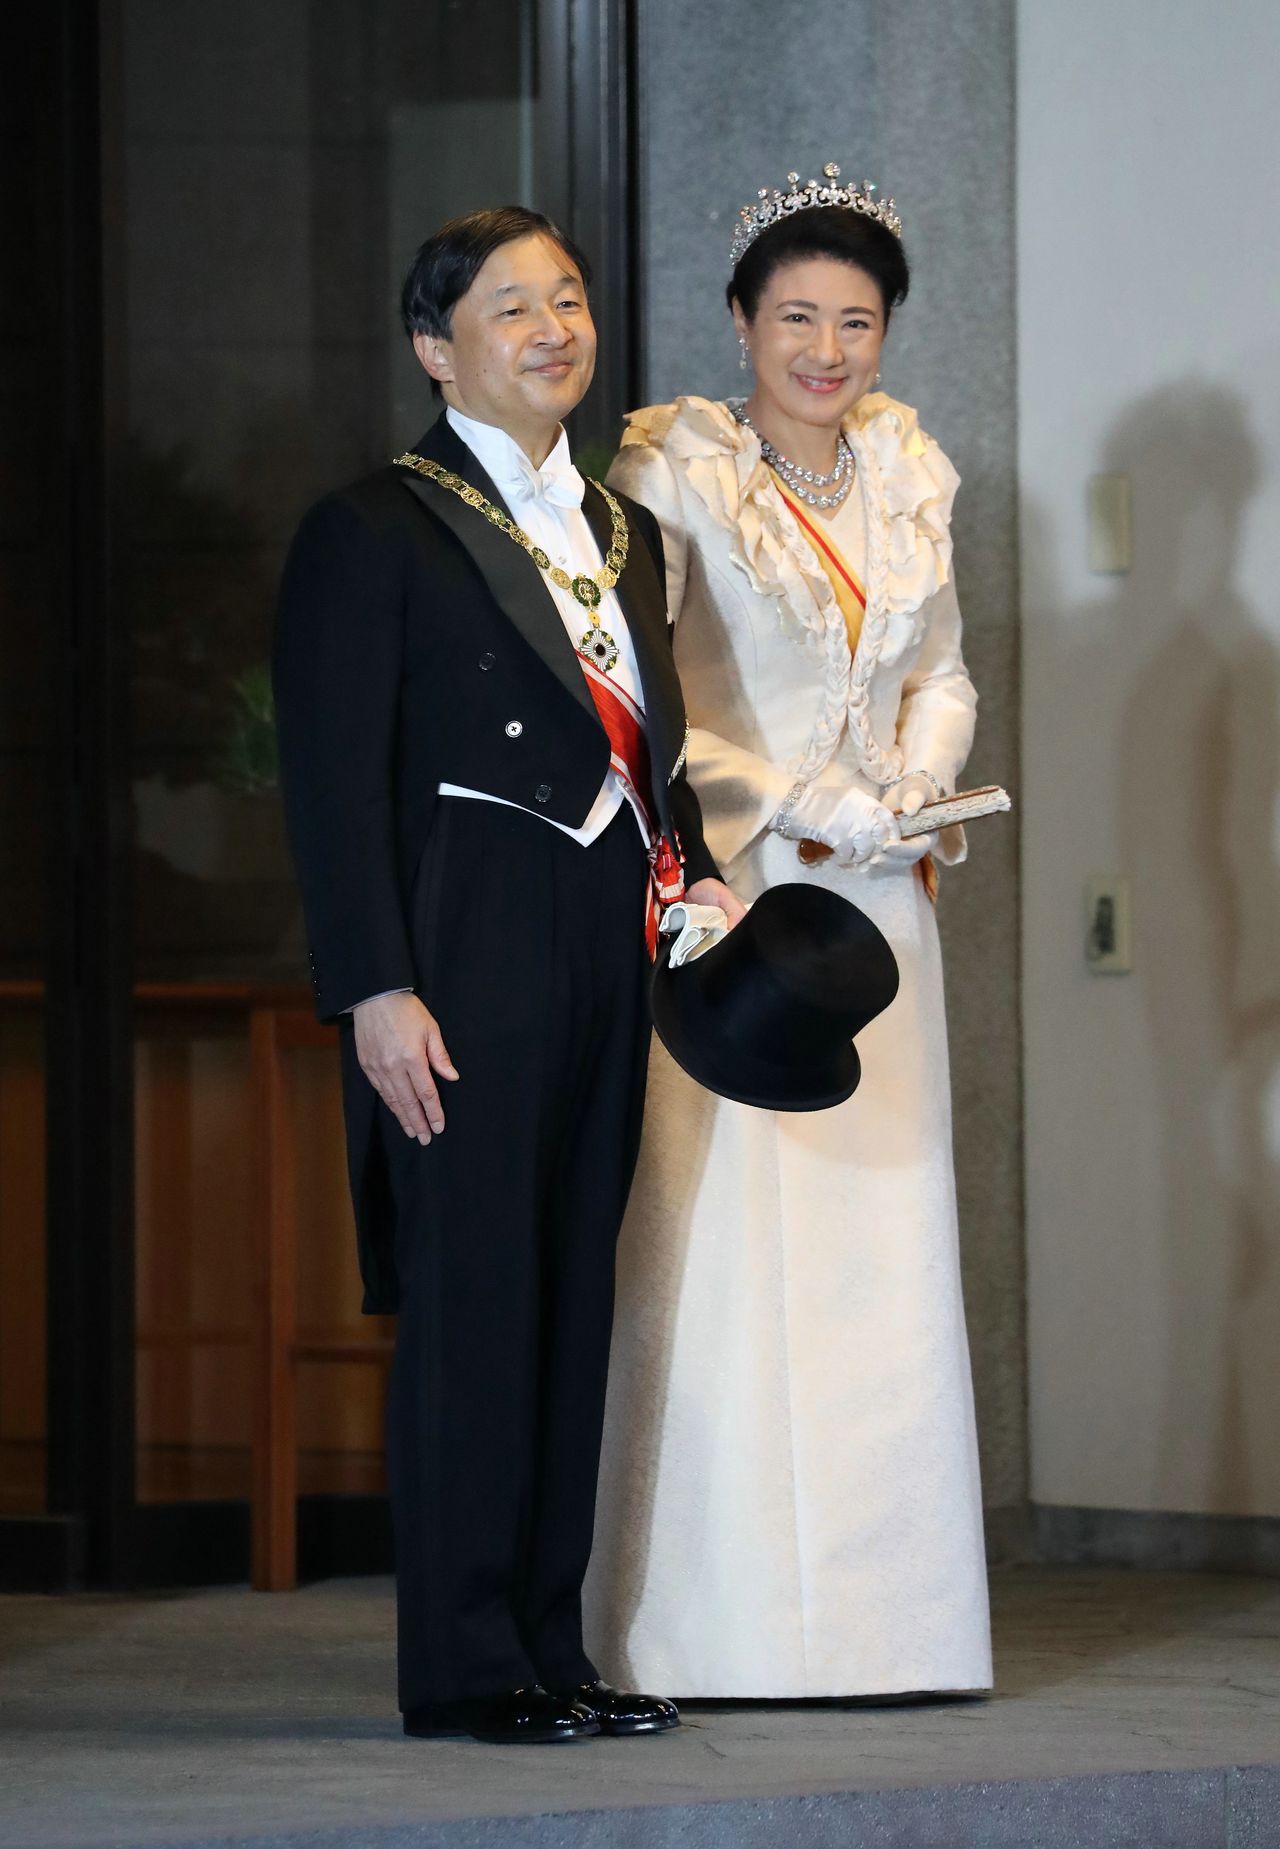 El Emperador y la Emperatriz tras finalizar el desfile, en la puerta del Palacio de Akasaka situado en el distrito de Minato. (Fotografía oficial, Jiji)